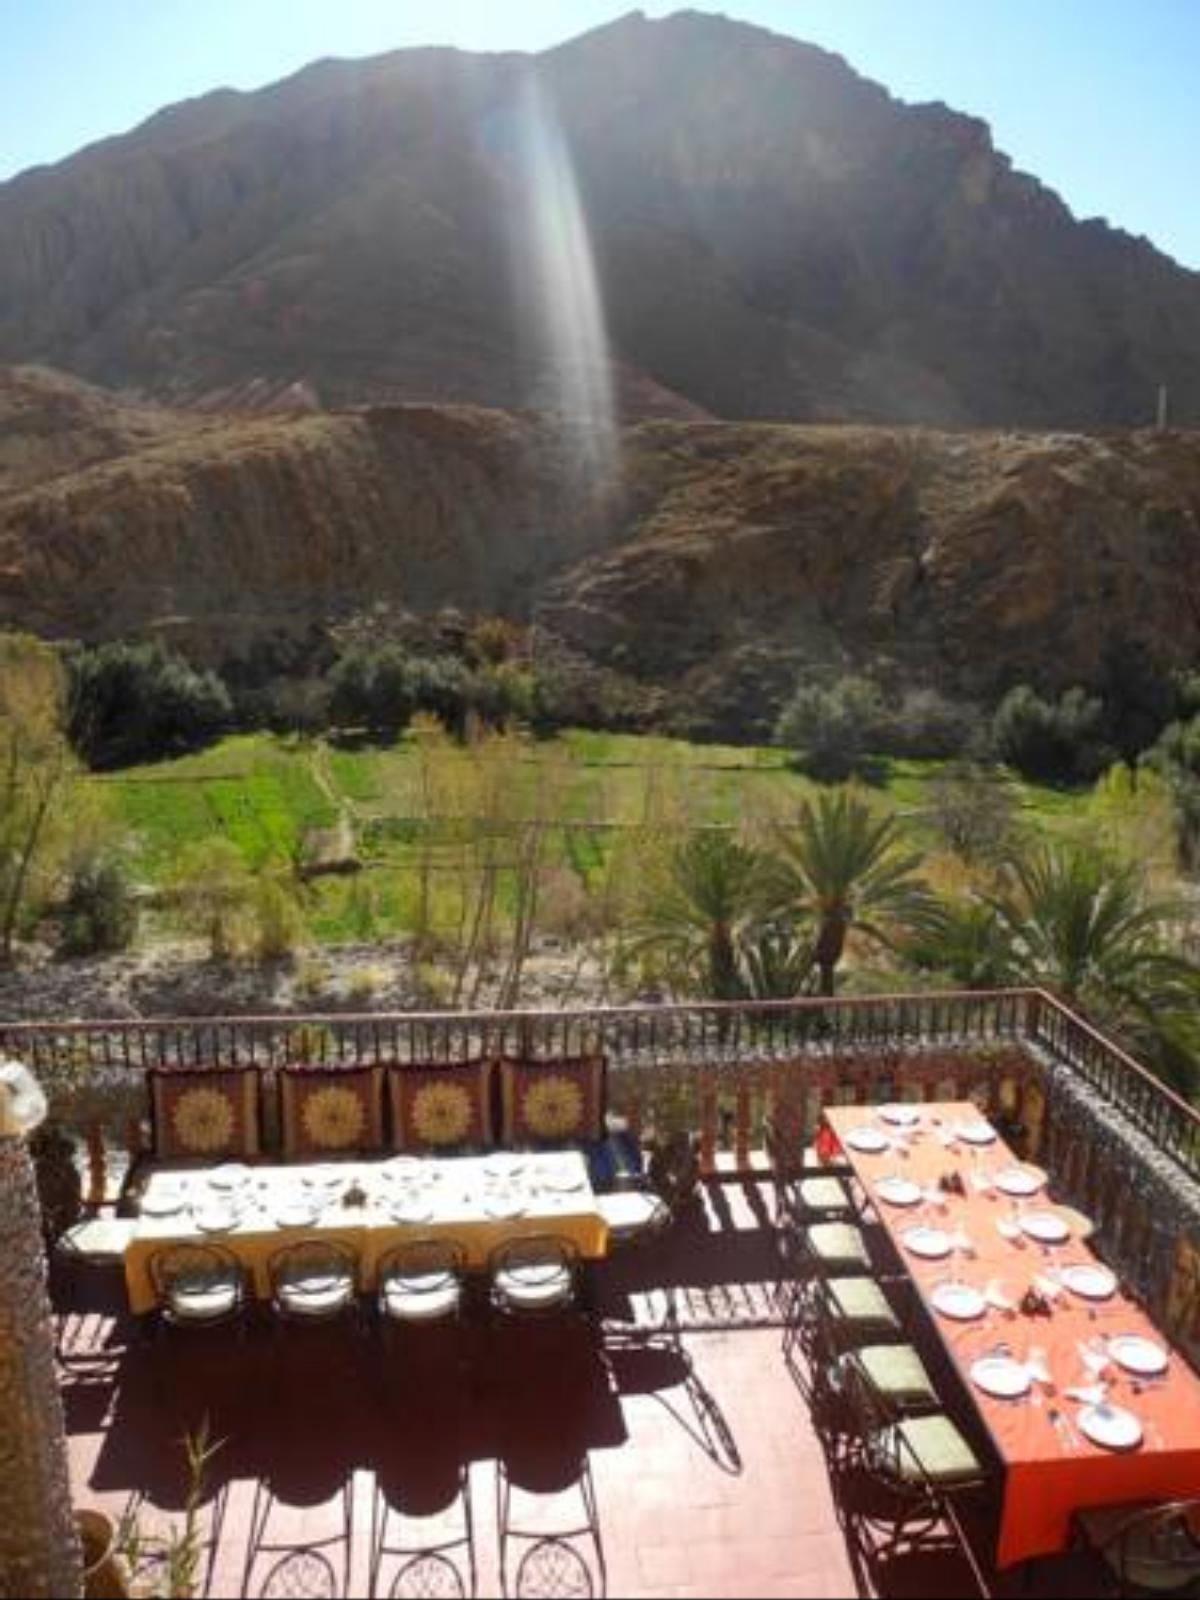 Maison d'Hôte Valentine Hotel Tinerhir Morocco